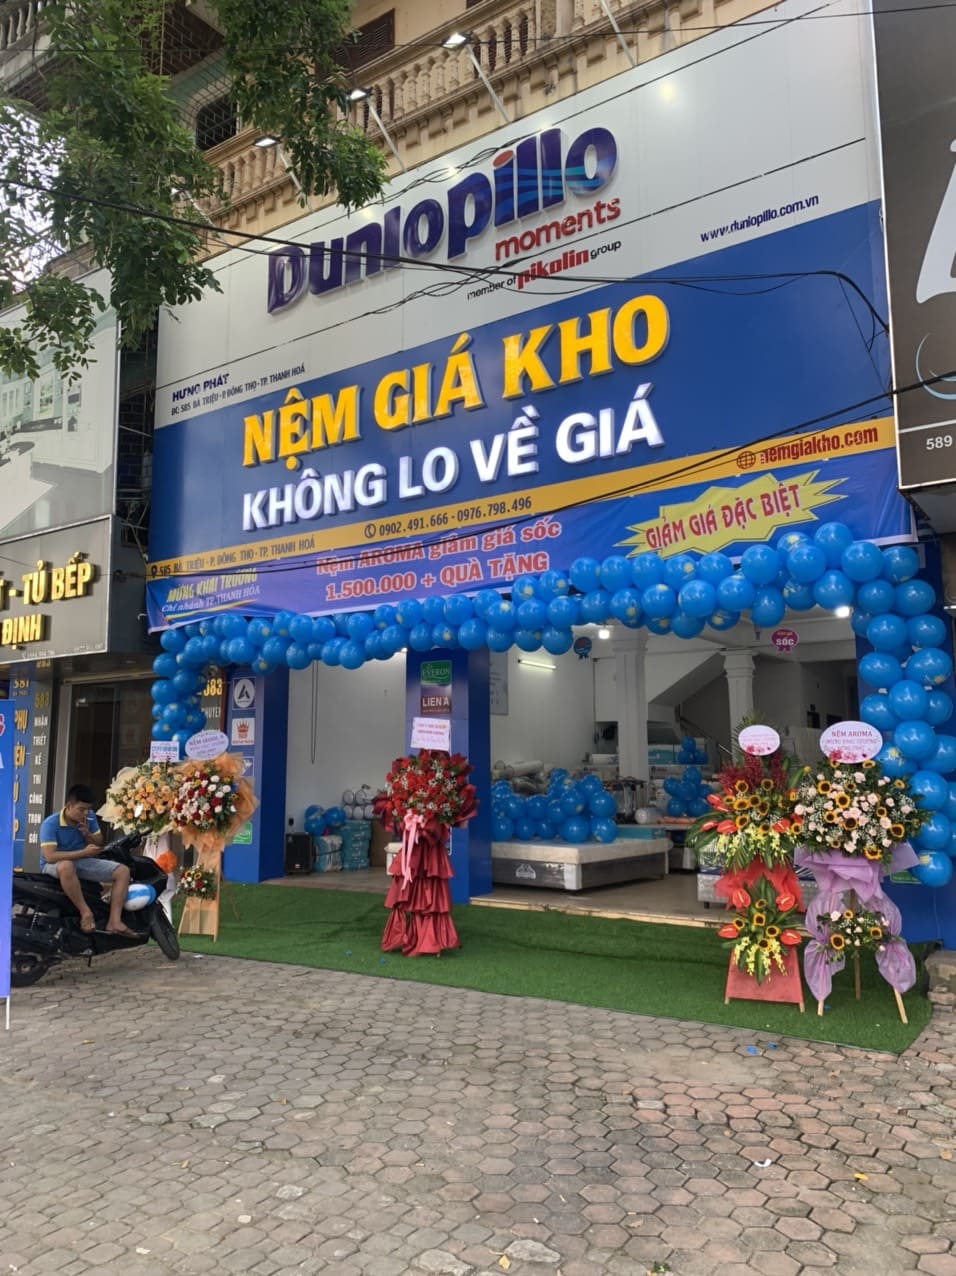 Khai trương cửa hàng nệm giá kho tại Thanh Hóa